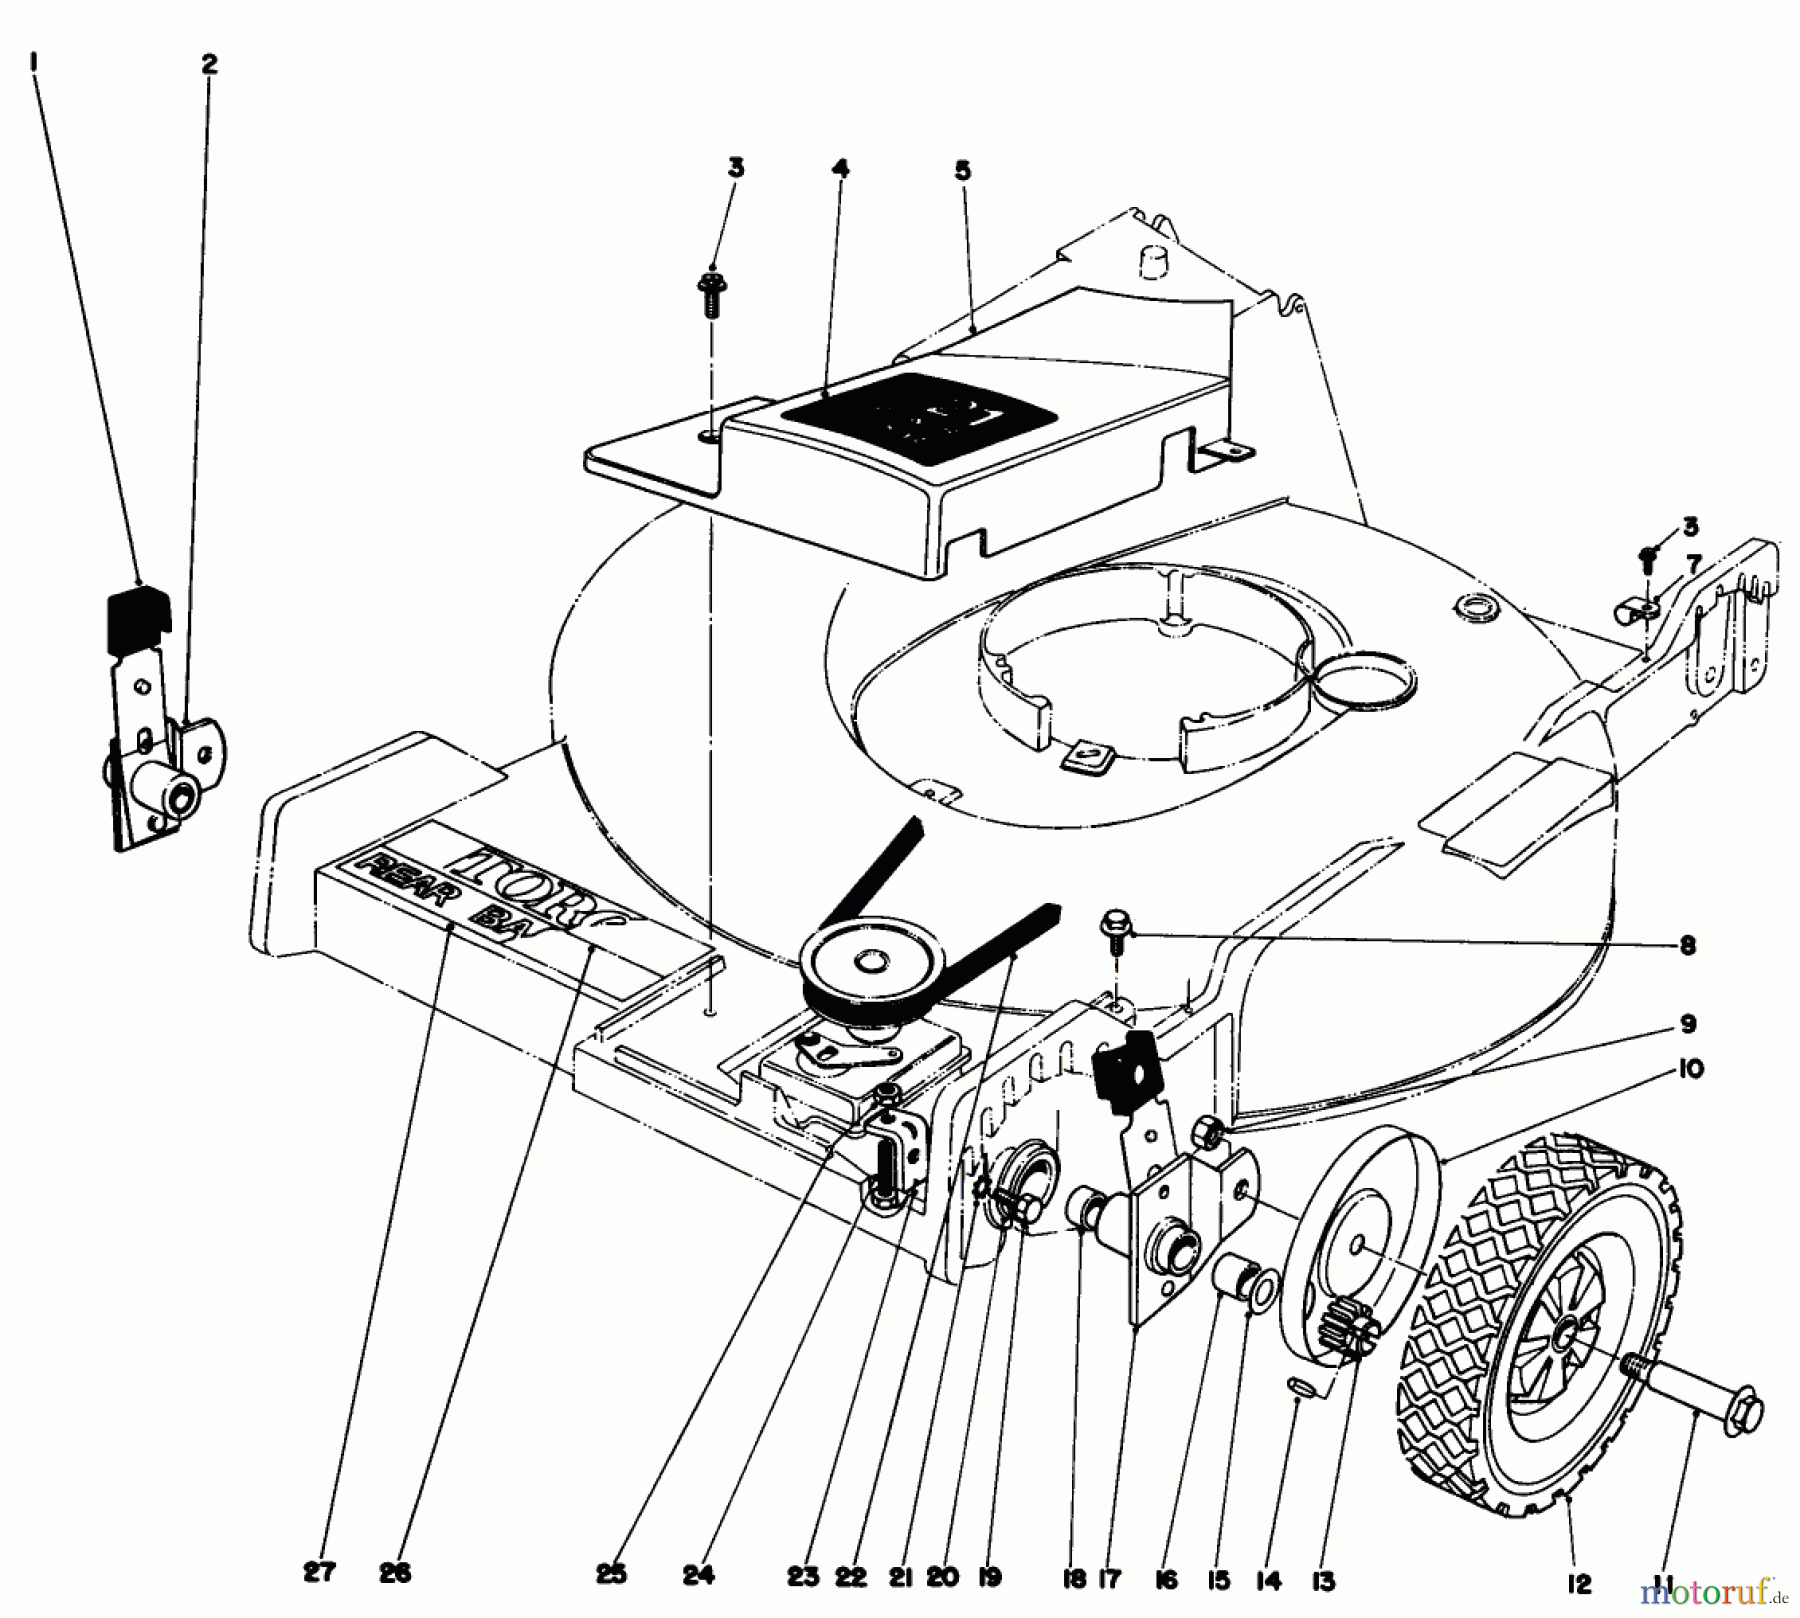  Toro Neu Mowers, Walk-Behind Seite 1 20725 - Toro Lawnmower, 1979 (9000001-9999999) FRONT WHEEL AND PIVOT ARM ASSEMBLY